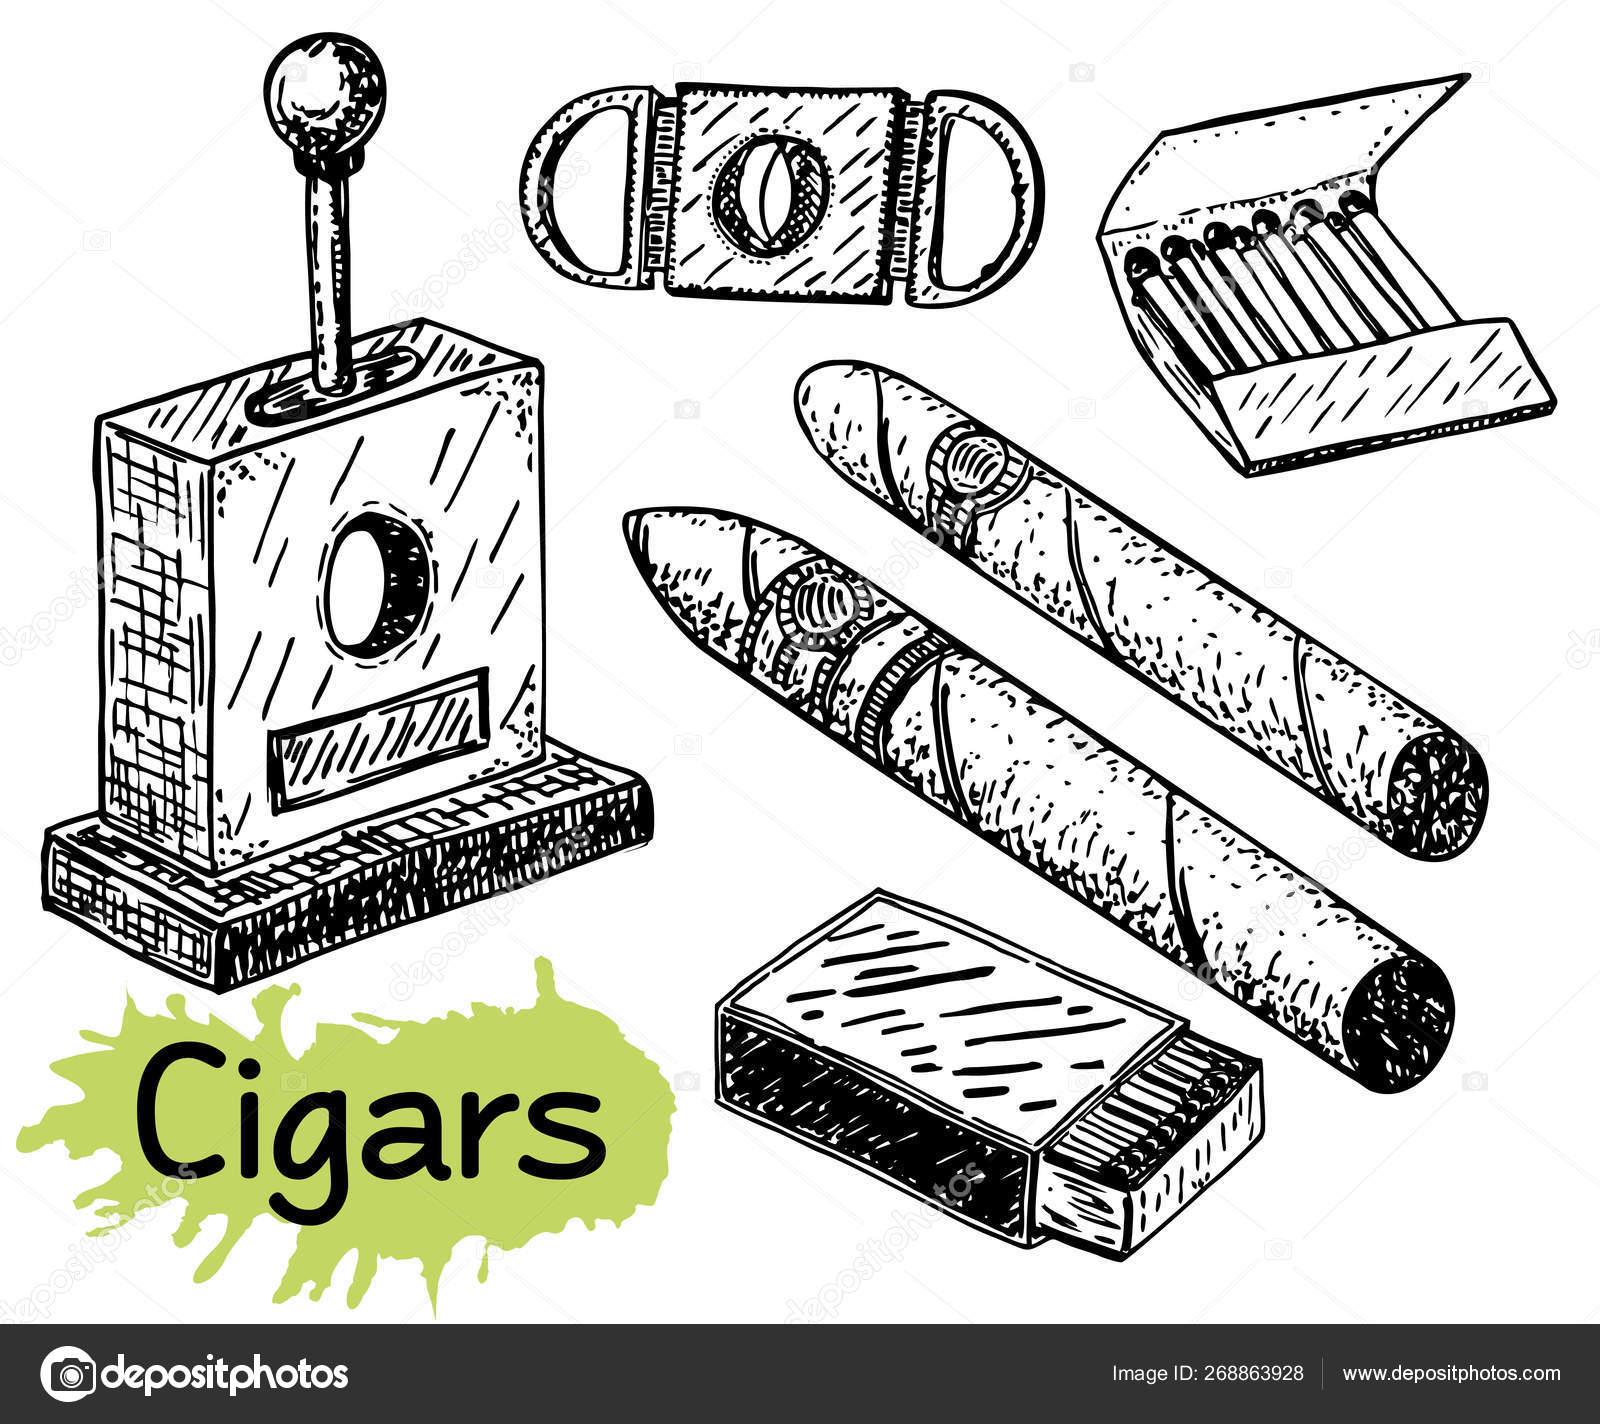 Cigar Drawing Images  Free Download on Freepik